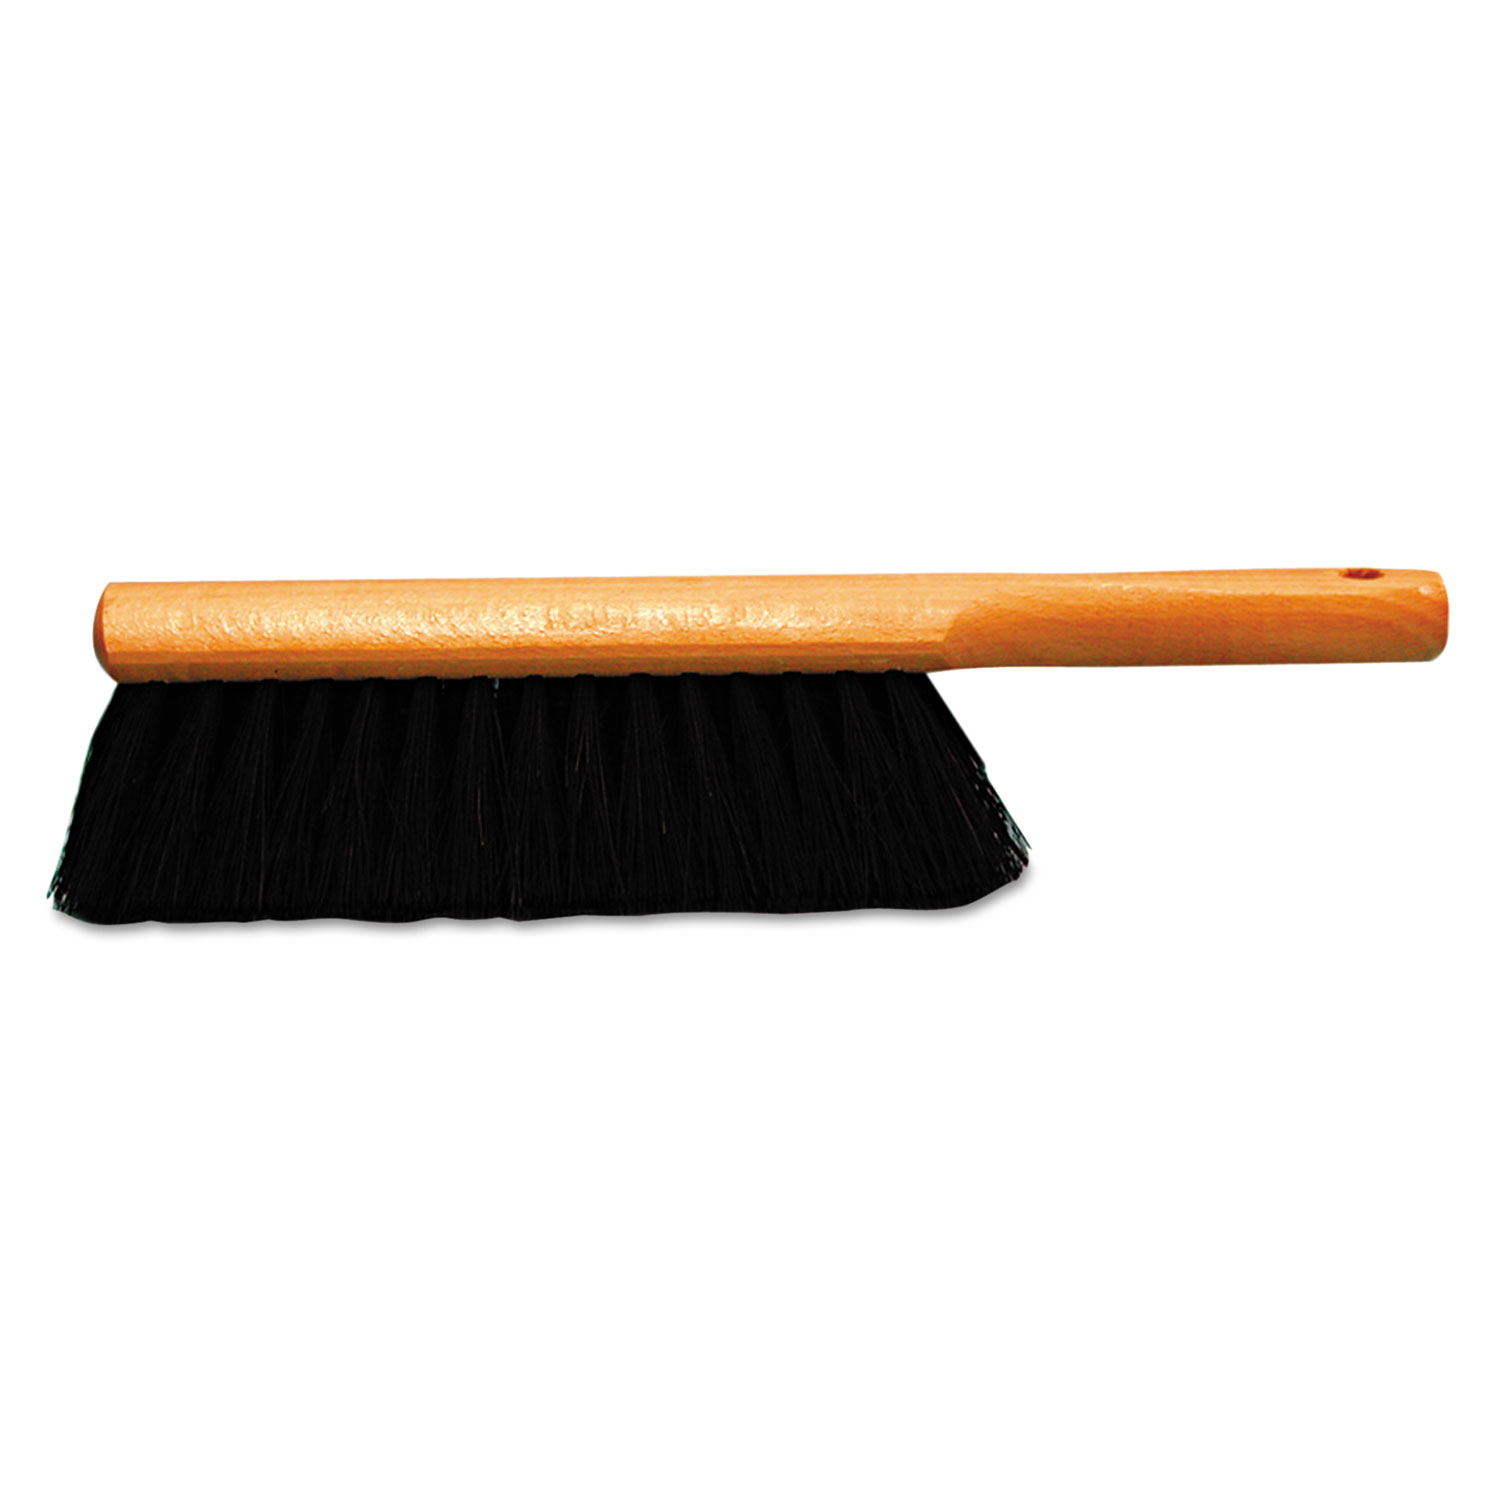 Dust-Pan Brush, Tampico Fill